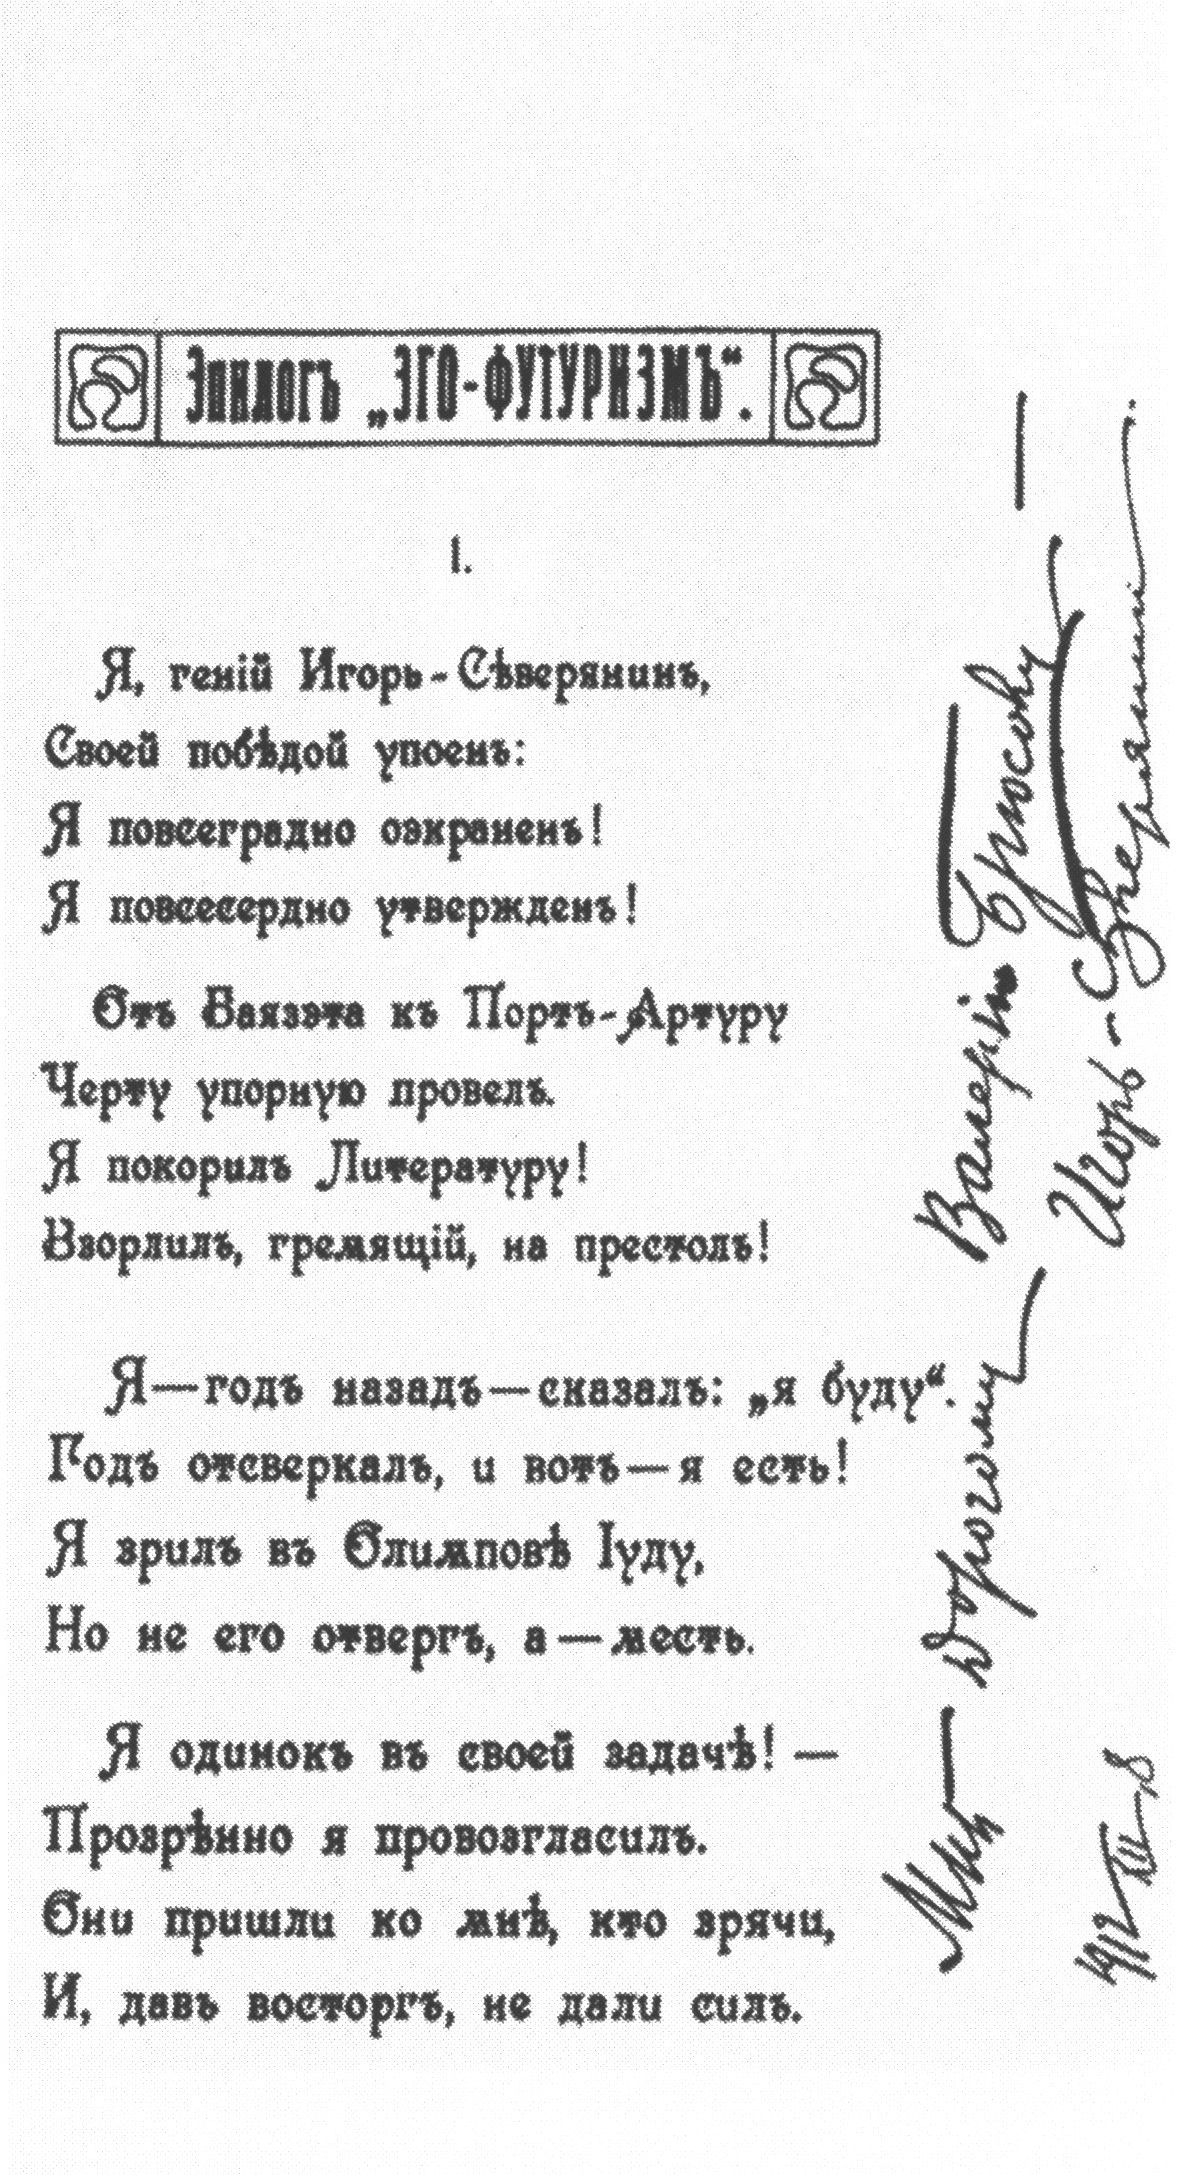 Автограф Игоря Северянина Валерию Брюсову. 1912 г.